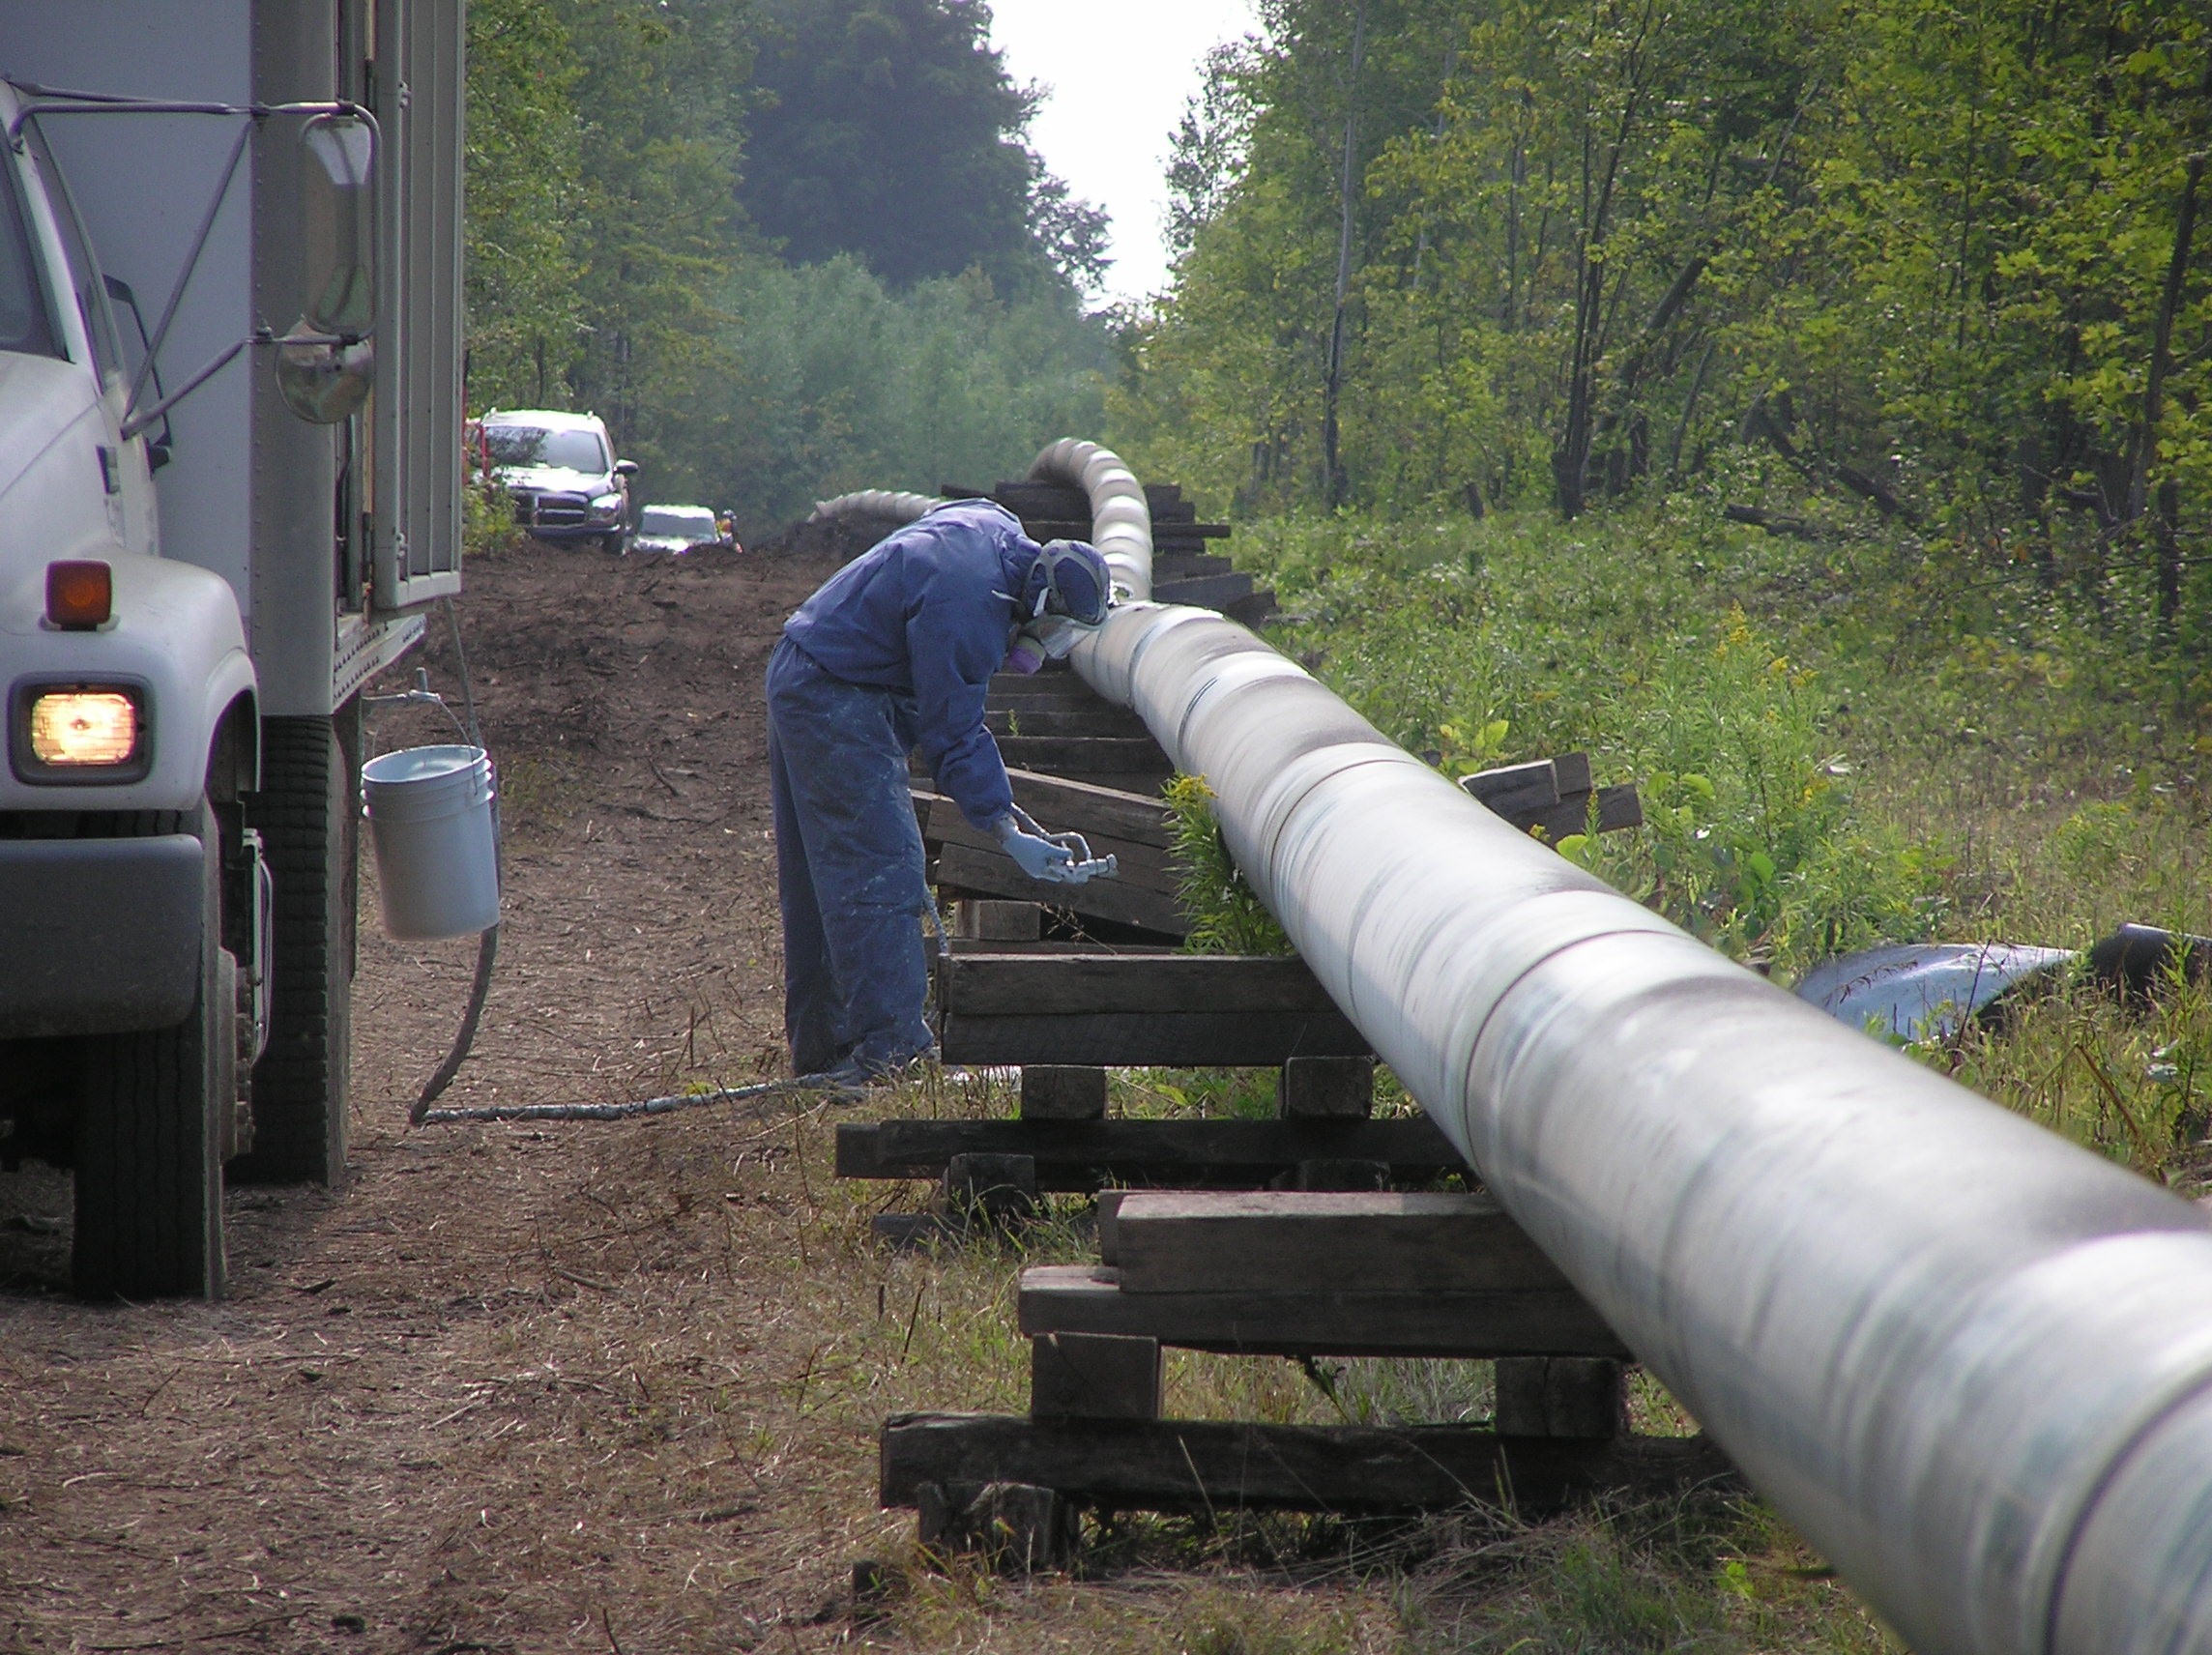 Un travailleur portant un masque à gaz inspecte un pipeline près d’un camion.